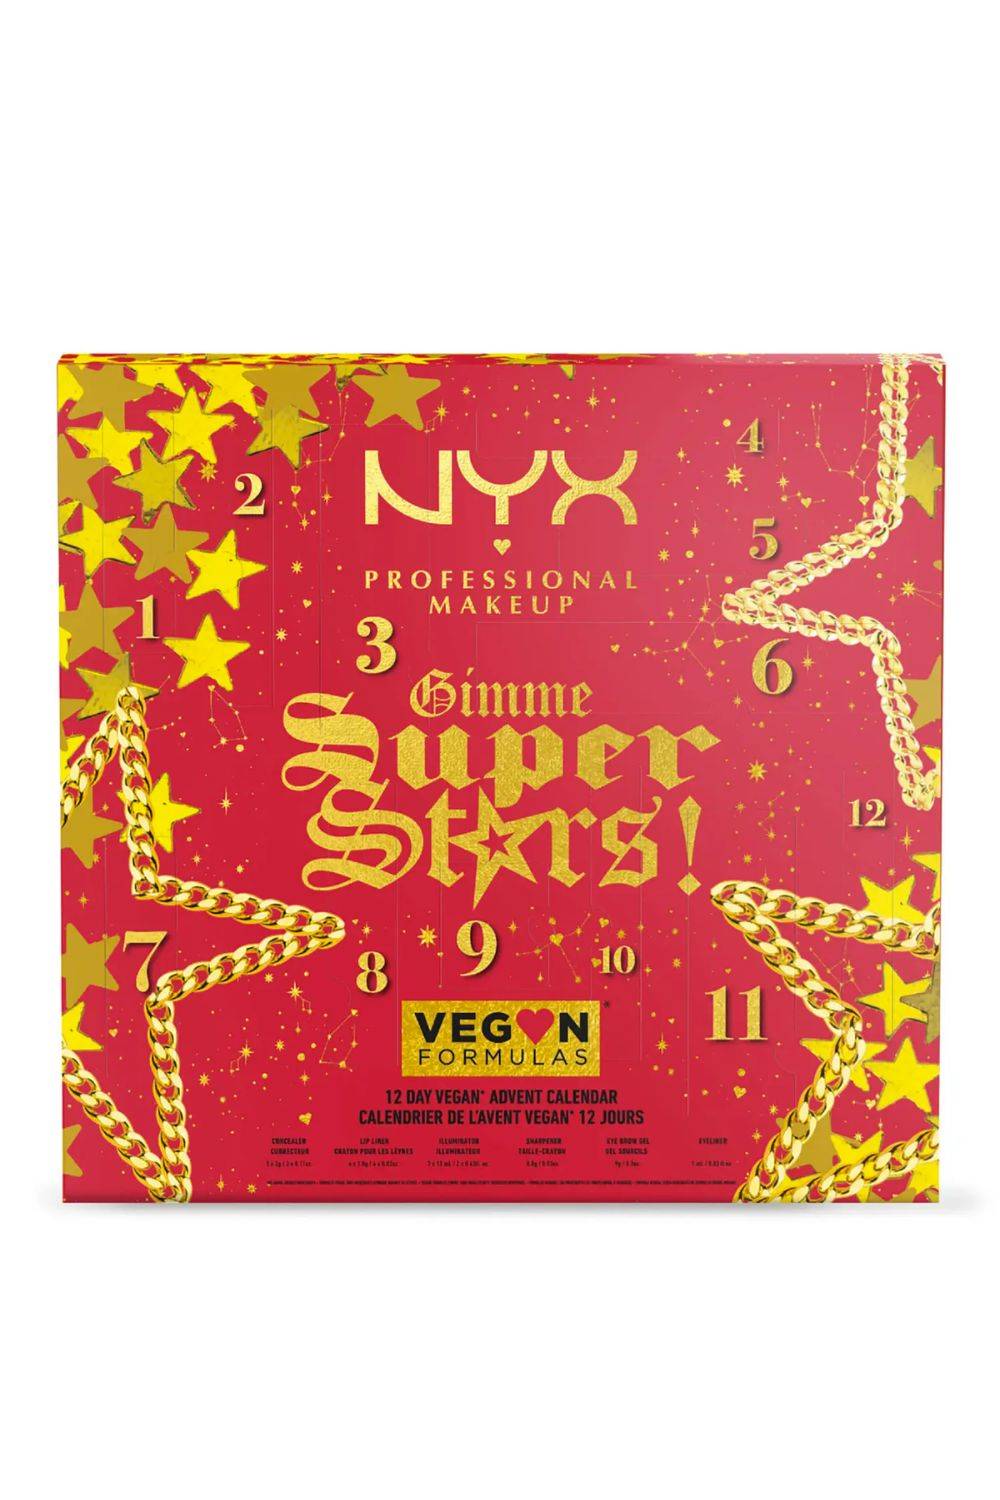 ¡NYX Professional Makeup Gimme Super Stars! calendario de Adviento Vegano Icónico de 12 días